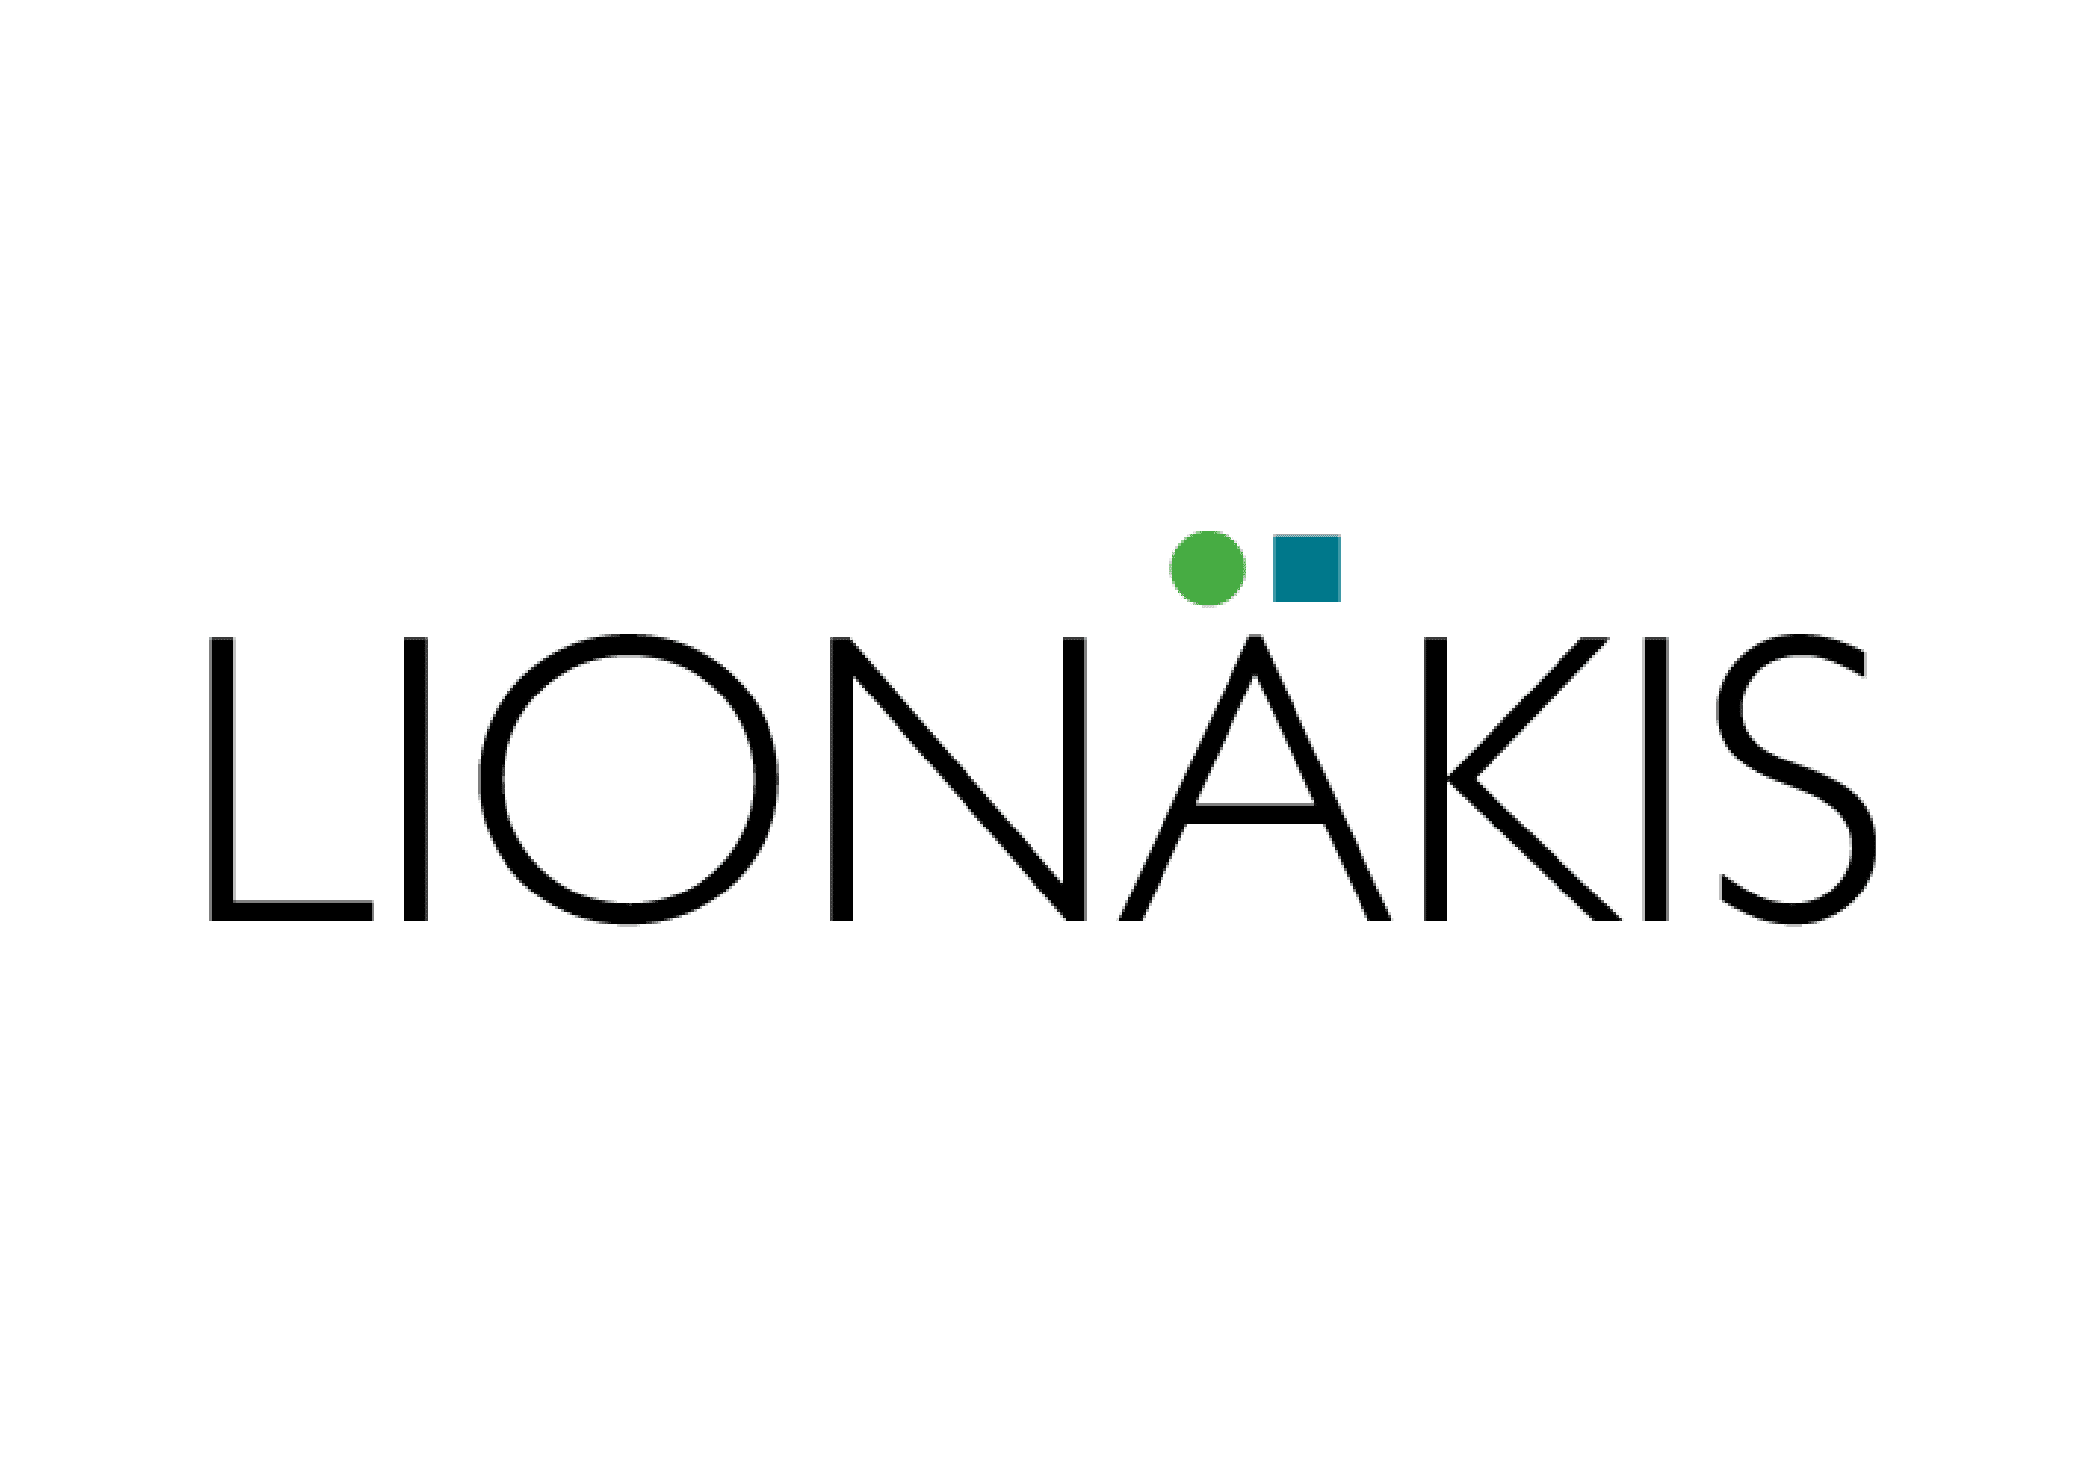 Lionakis